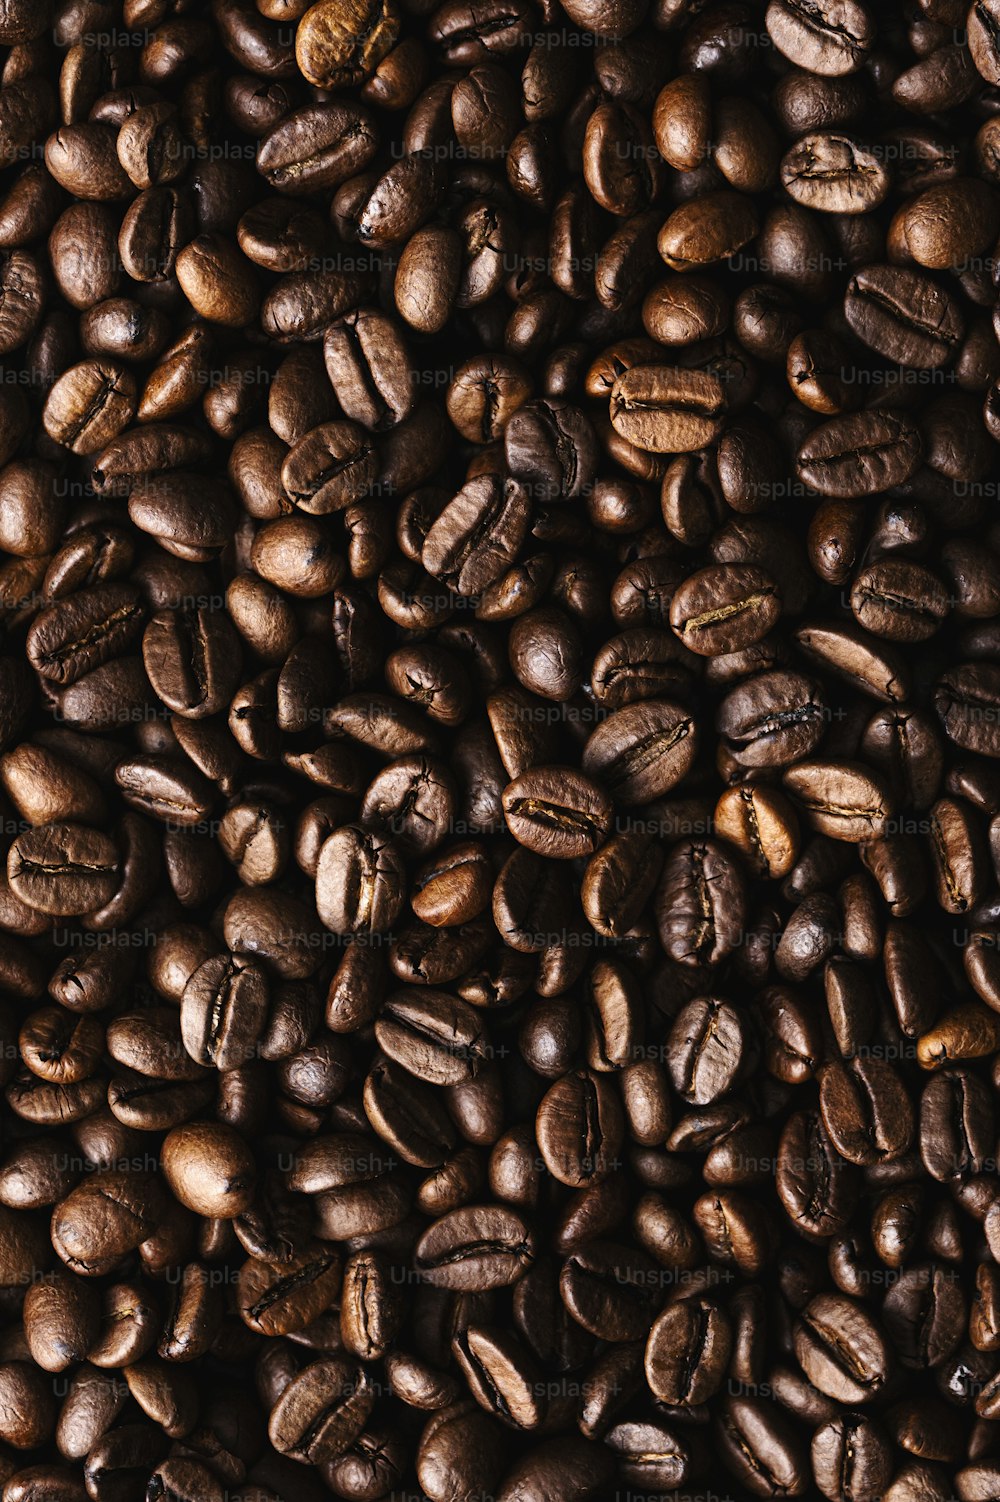 Una pila di chicchi di caffè è mostrata in questa immagine